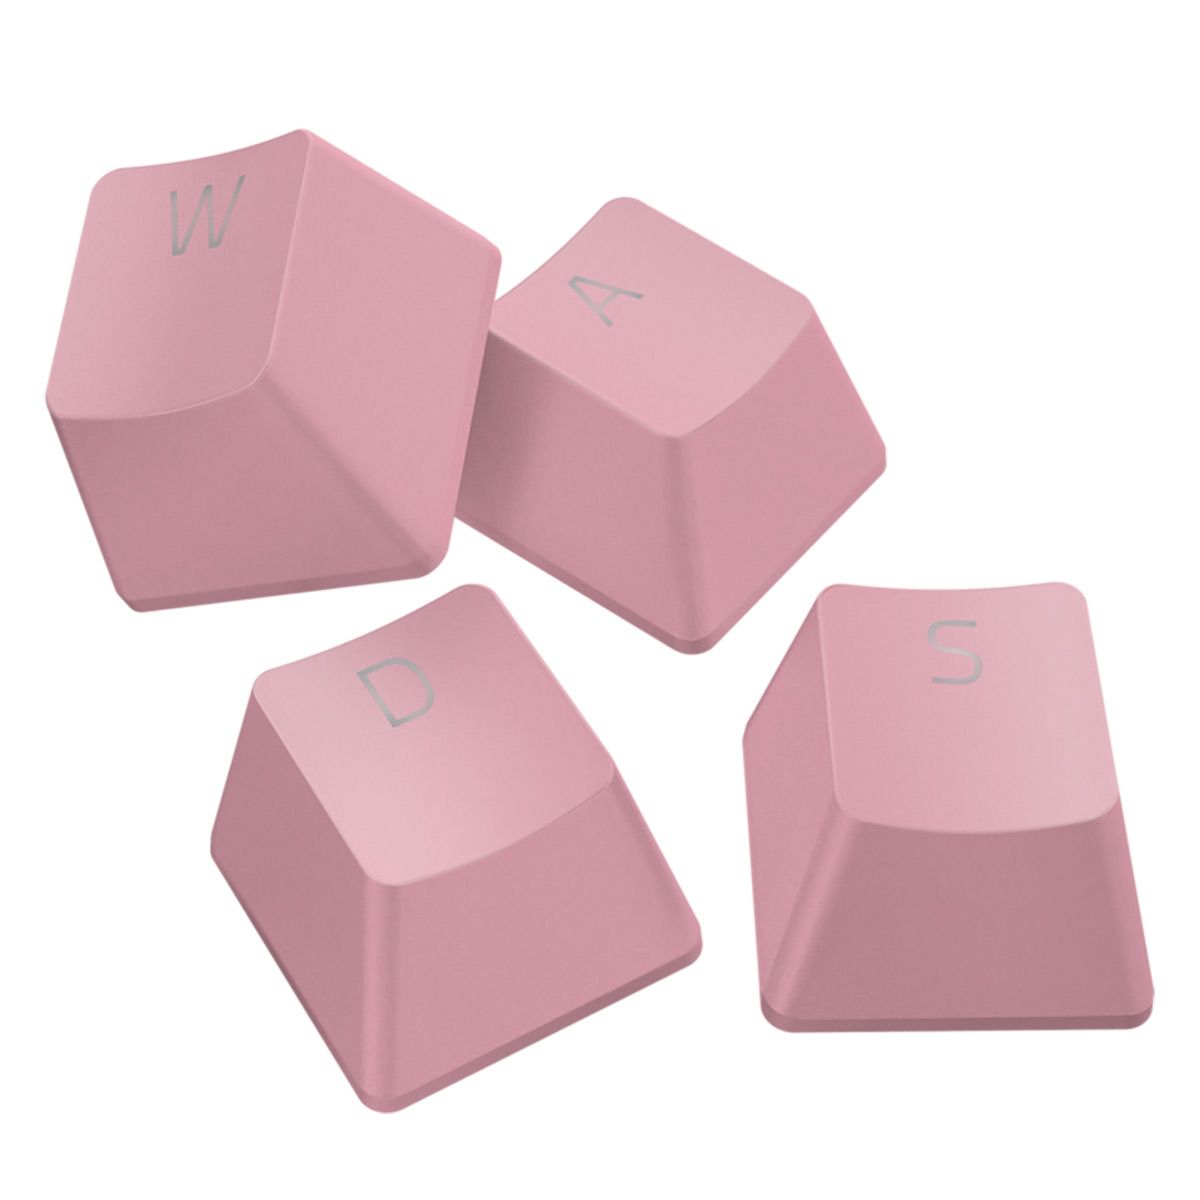  Keycap Razer PBT Upgrade Set - Pink 